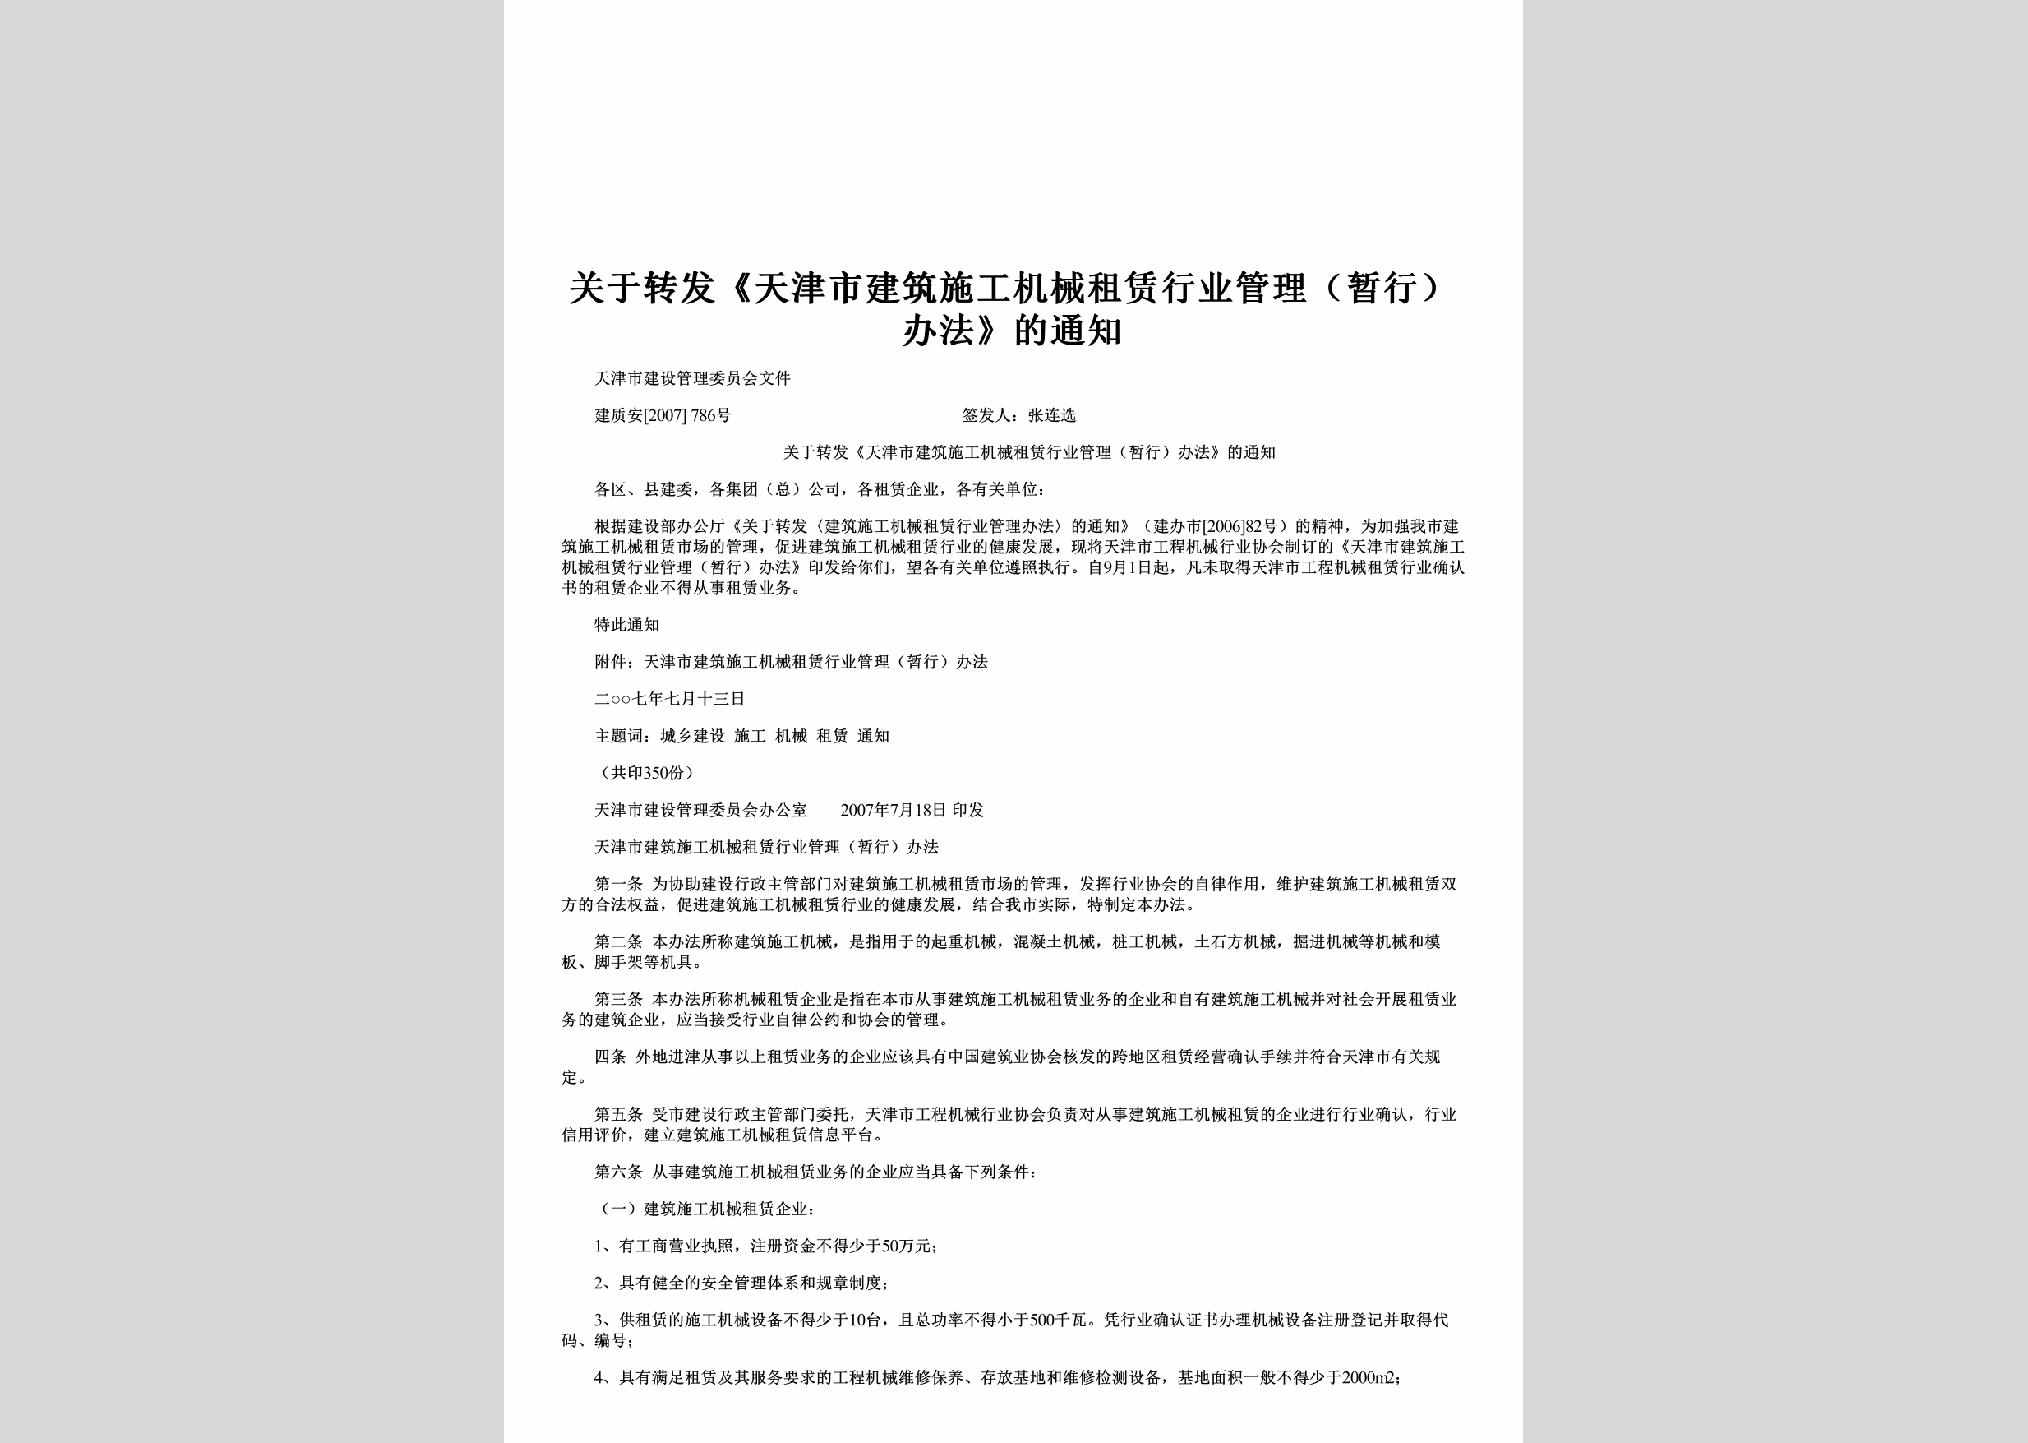 建质安[2007]786号：关于转发《天津市建筑施工机械租赁行业管理（暂行）办法》的通知